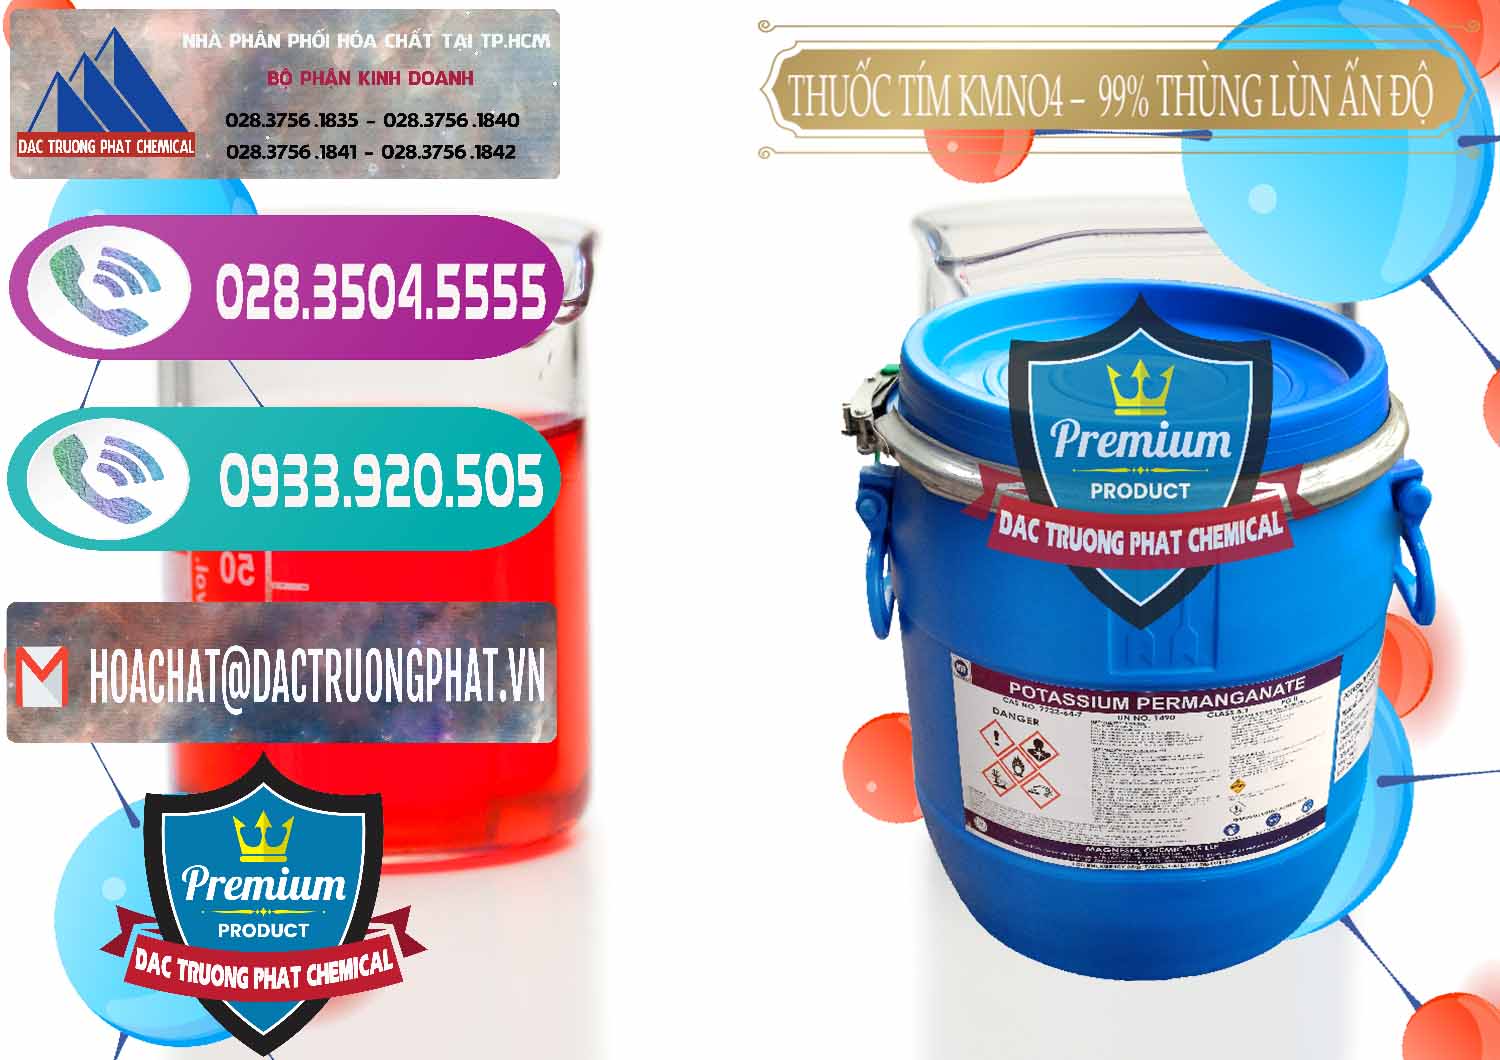 Công ty bán - cung cấp Thuốc Tím - KMNO4 Thùng Lùn 99% Magnesia Chemicals Ấn Độ India - 0165 - Đơn vị phân phối và bán hóa chất tại TP.HCM - hoachatxulynuoc.com